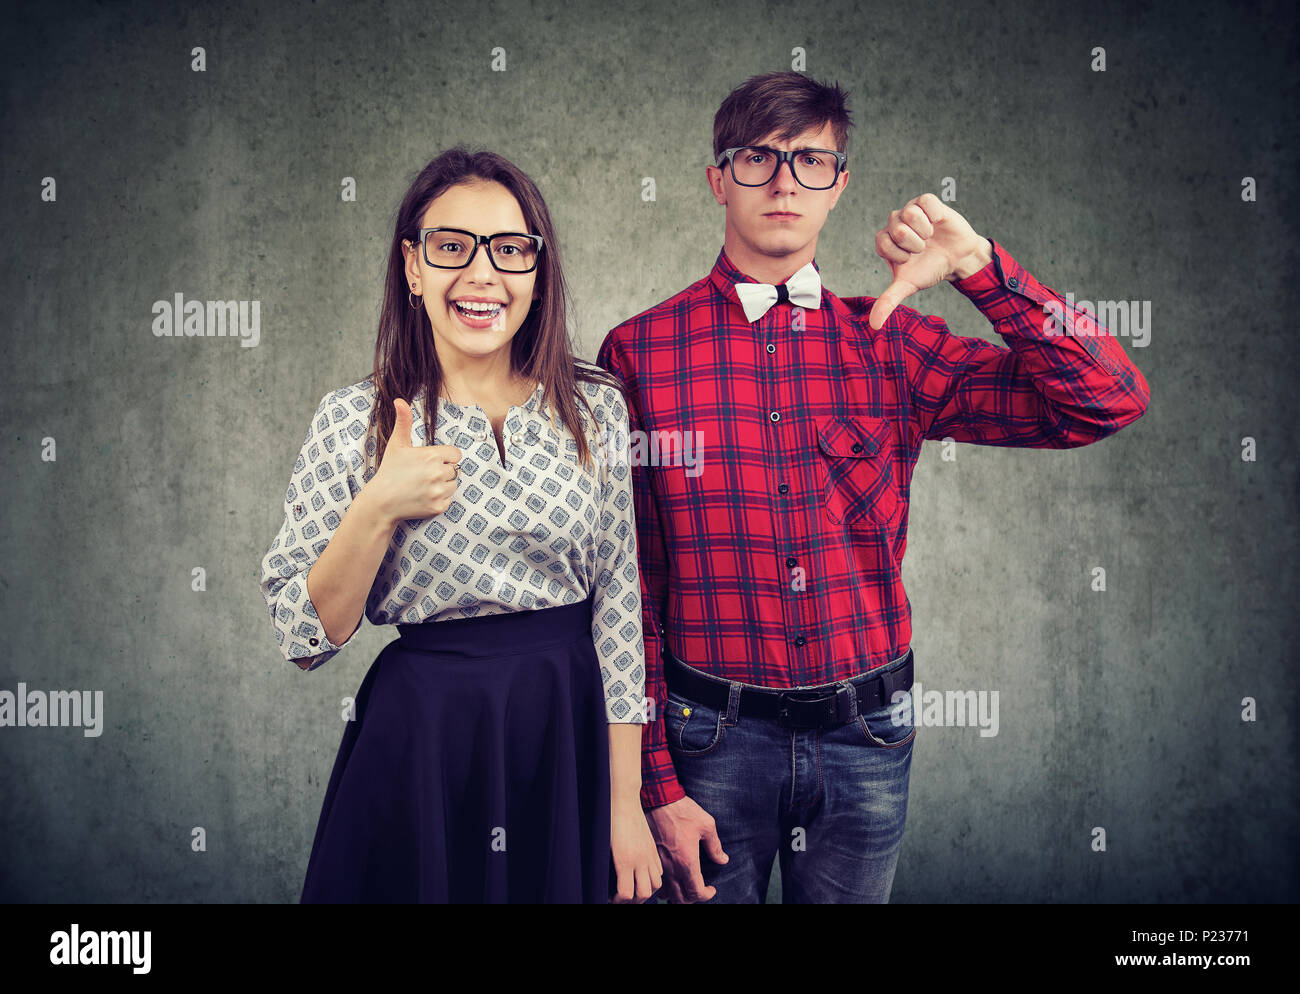 Giovane uomo elegante con il pollice verso il basso in piedi con la ragazza ottimista che mostra il pollice in su guardando la fotocamera. Foto Stock